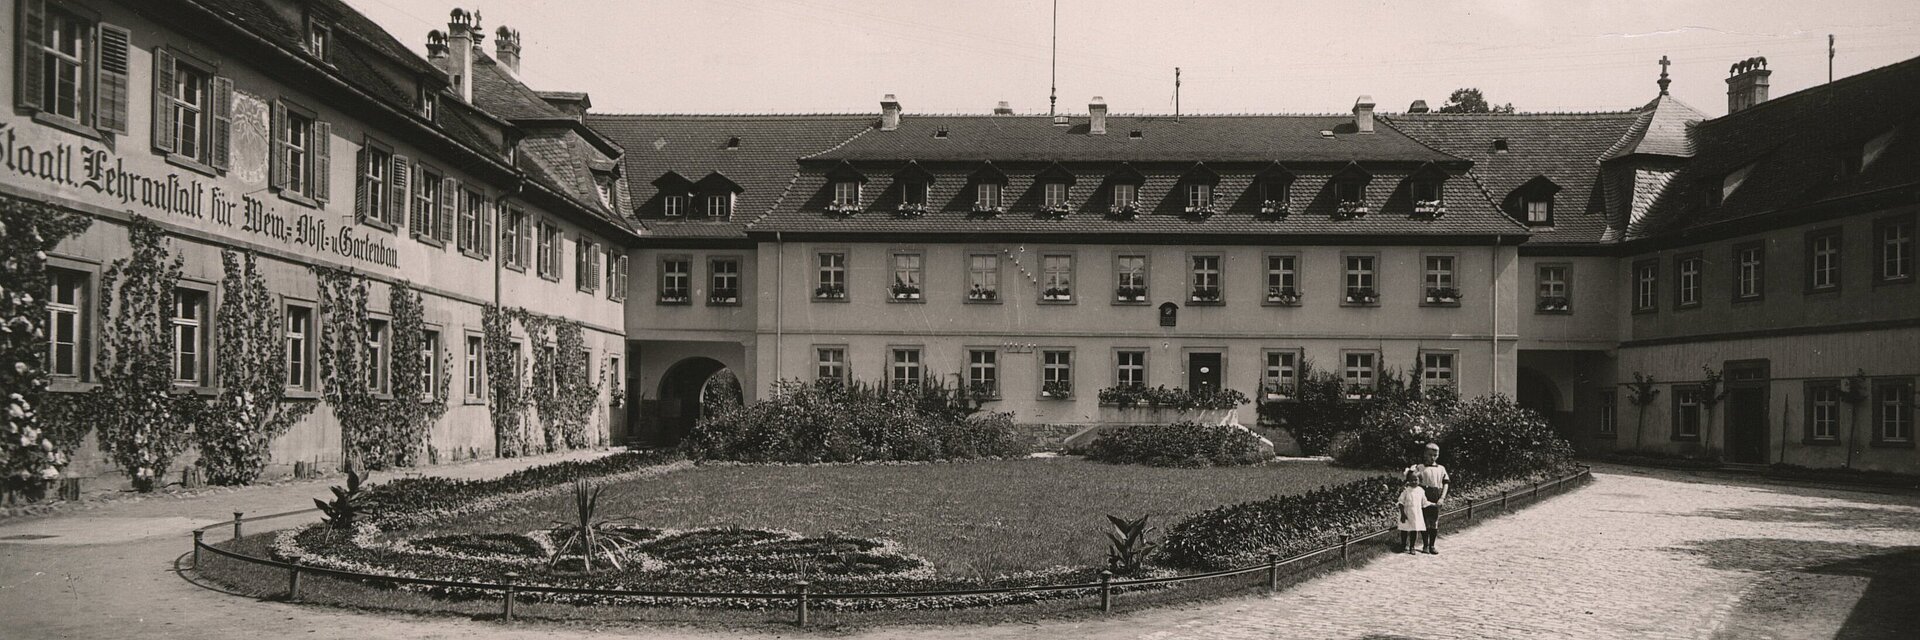 Historische Aufnahme der Landesanstalt für Wein- und Gartenbau um 1930